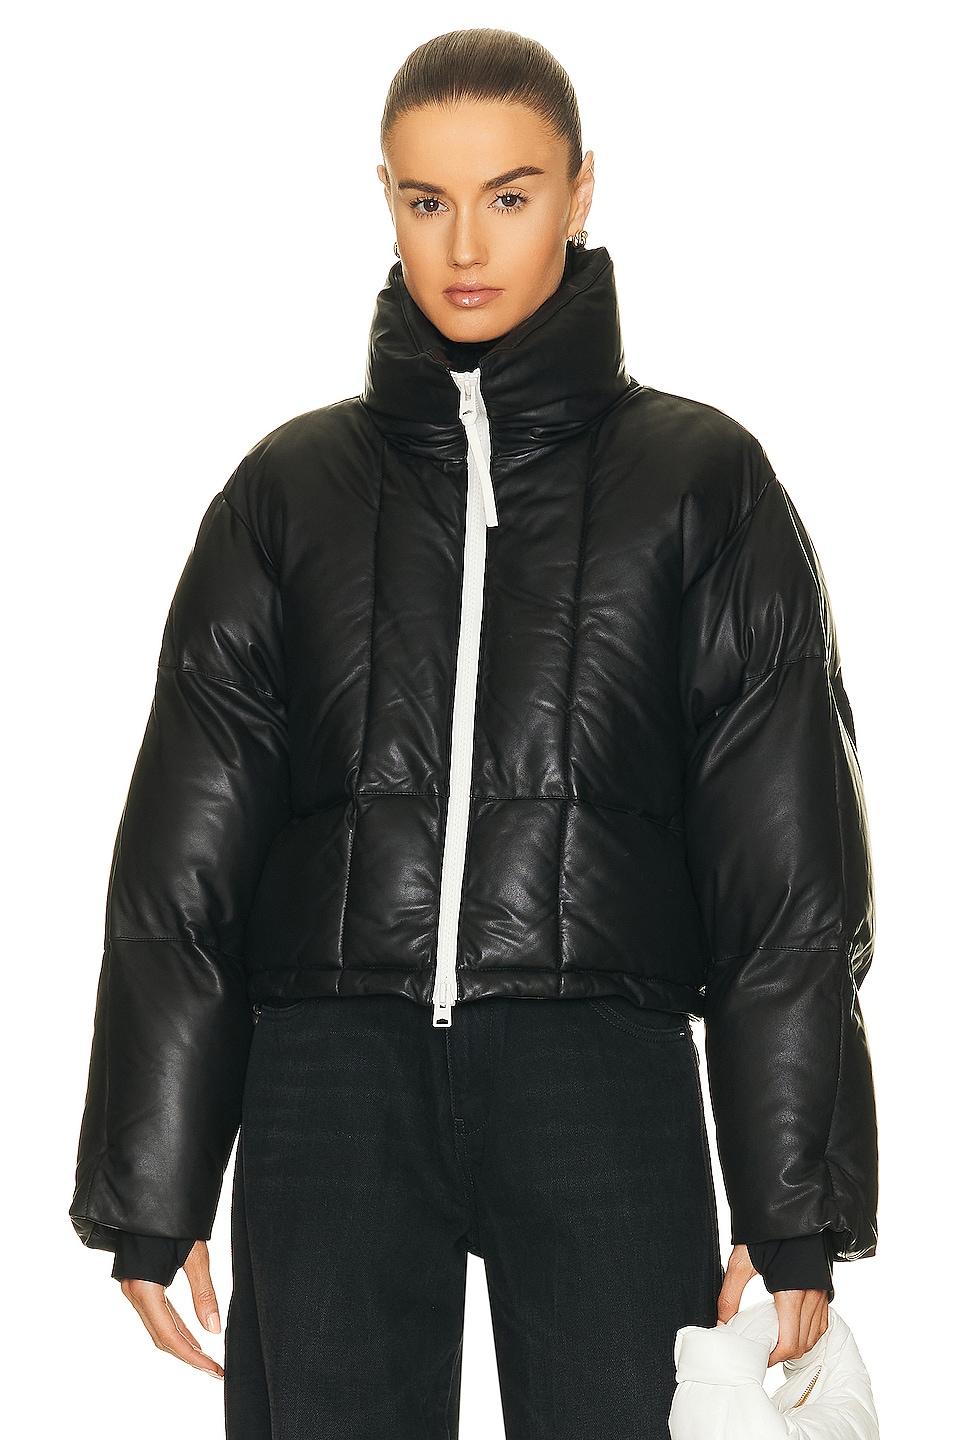 SHOREDITCH SKI CLUB Clara Leather Puffer Jacket in Black | Lyst